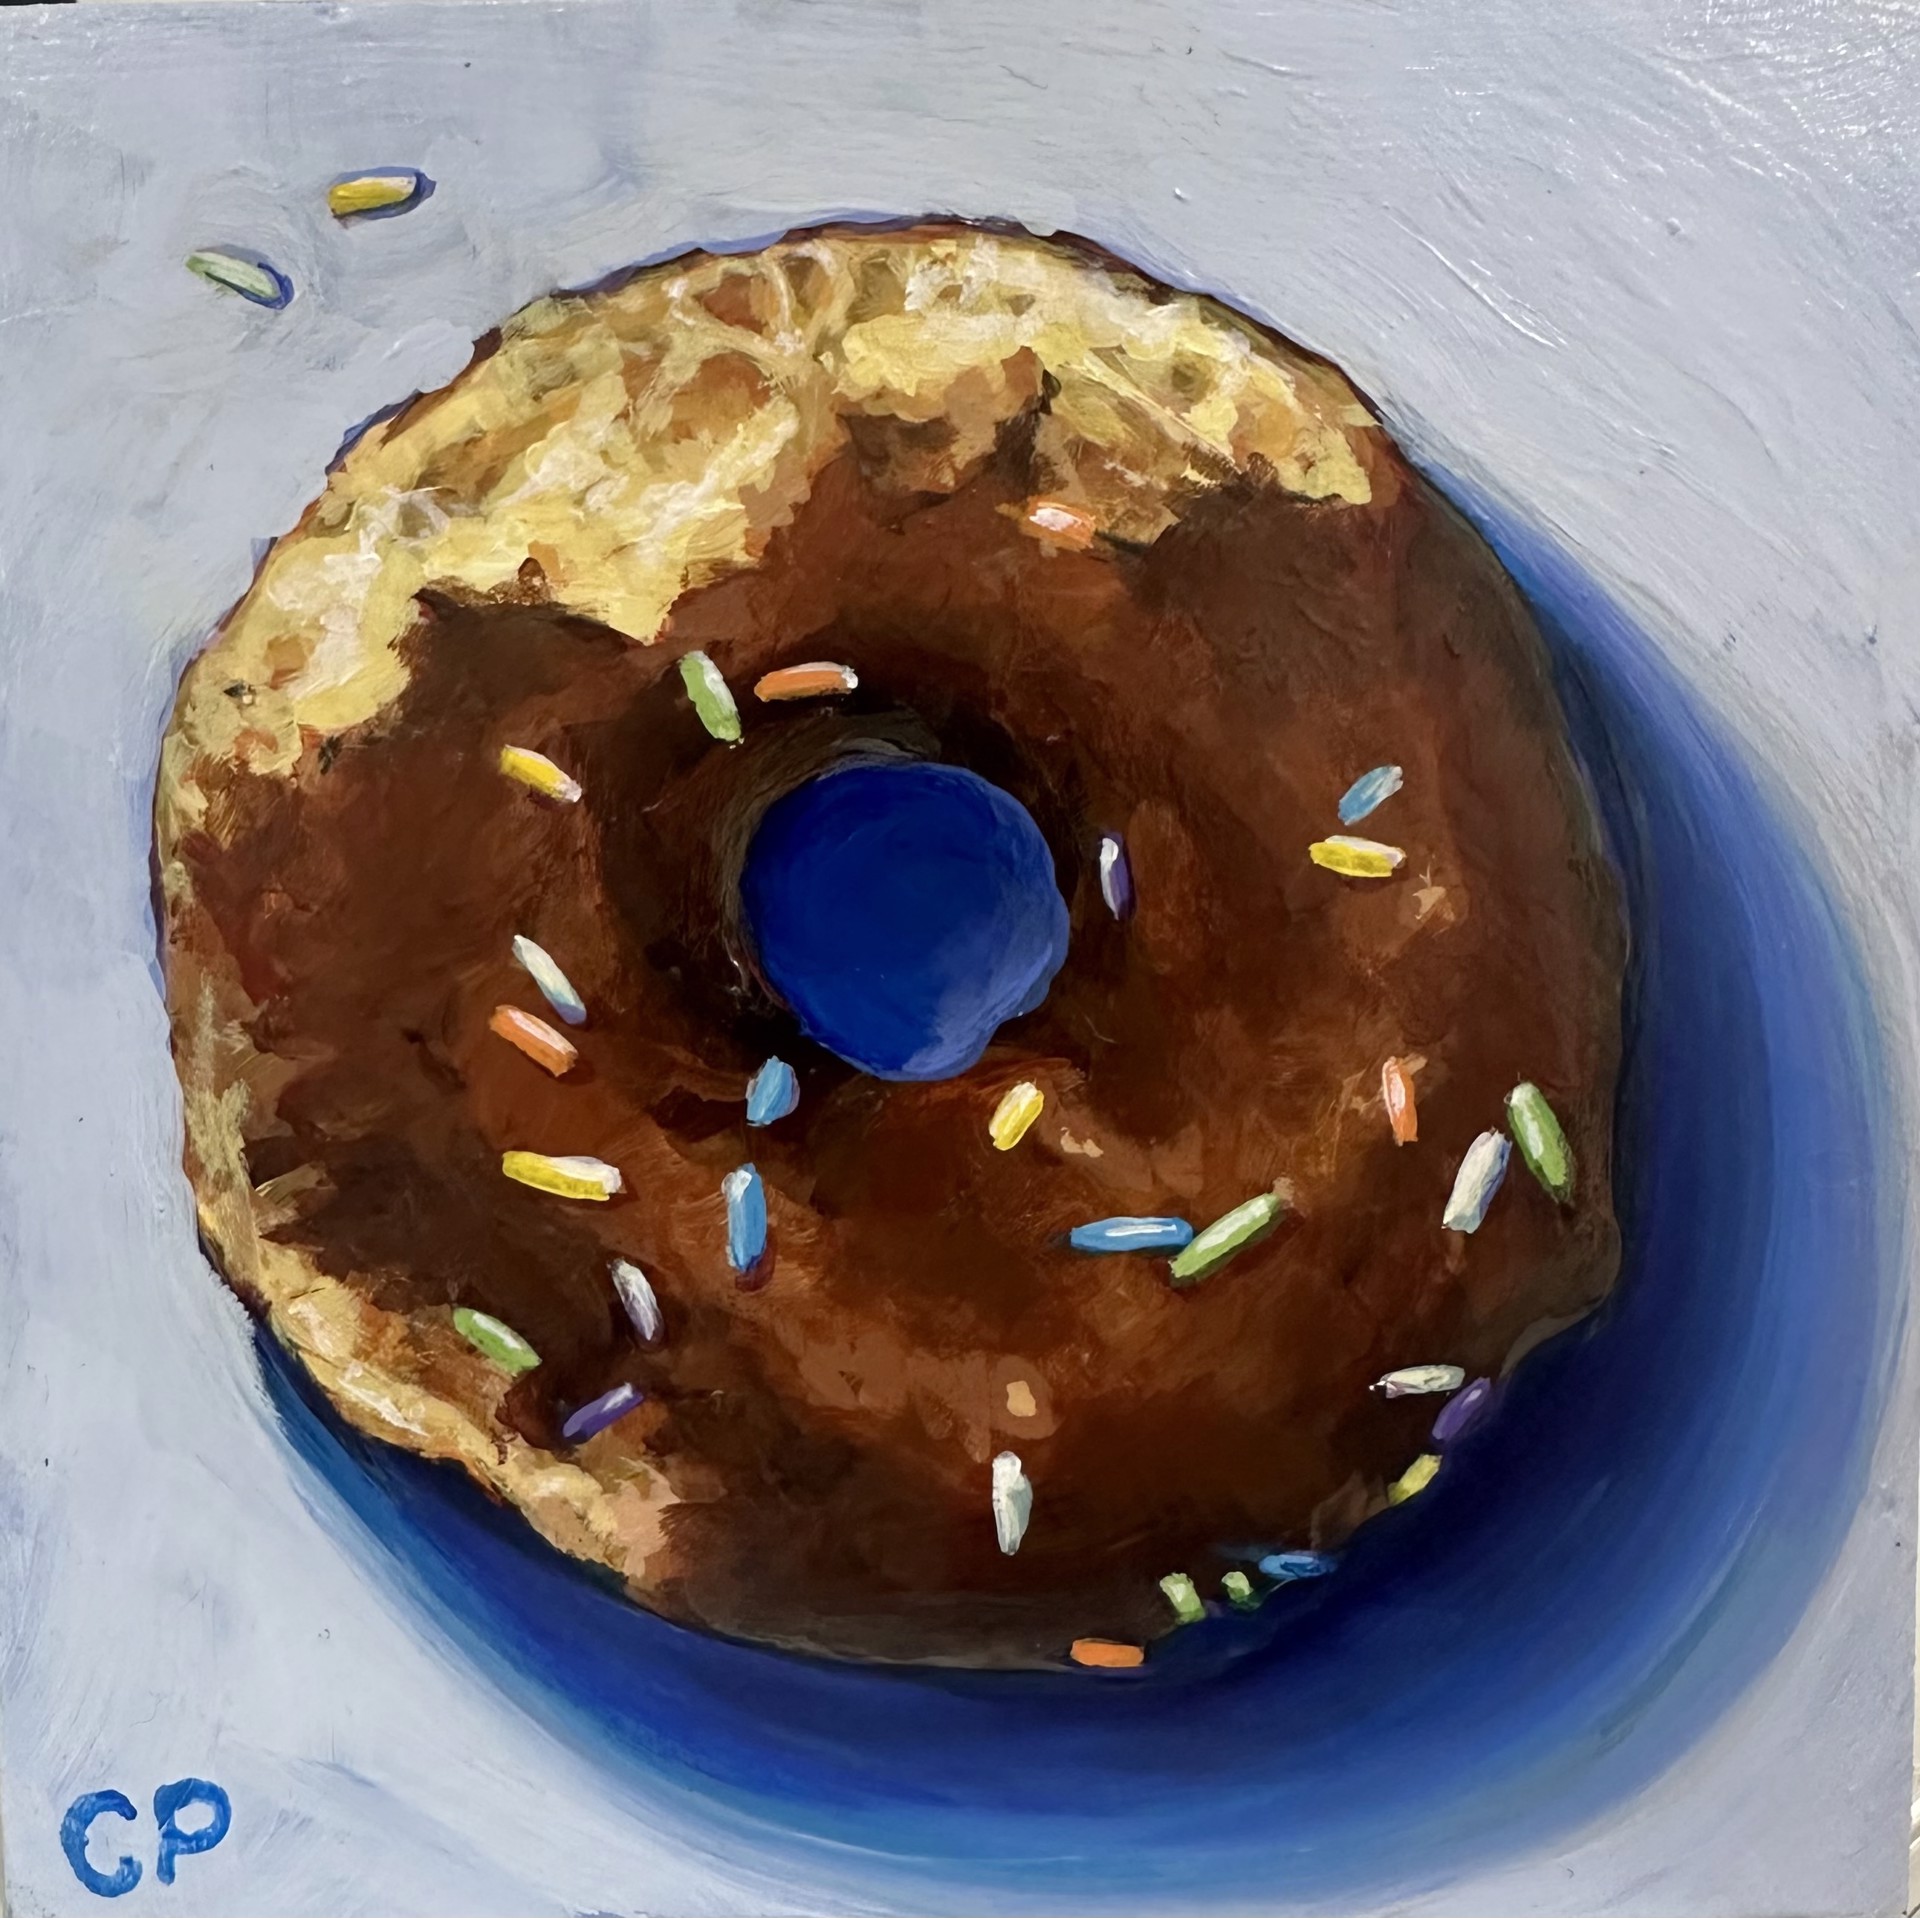 Donut II by Cullen Peck